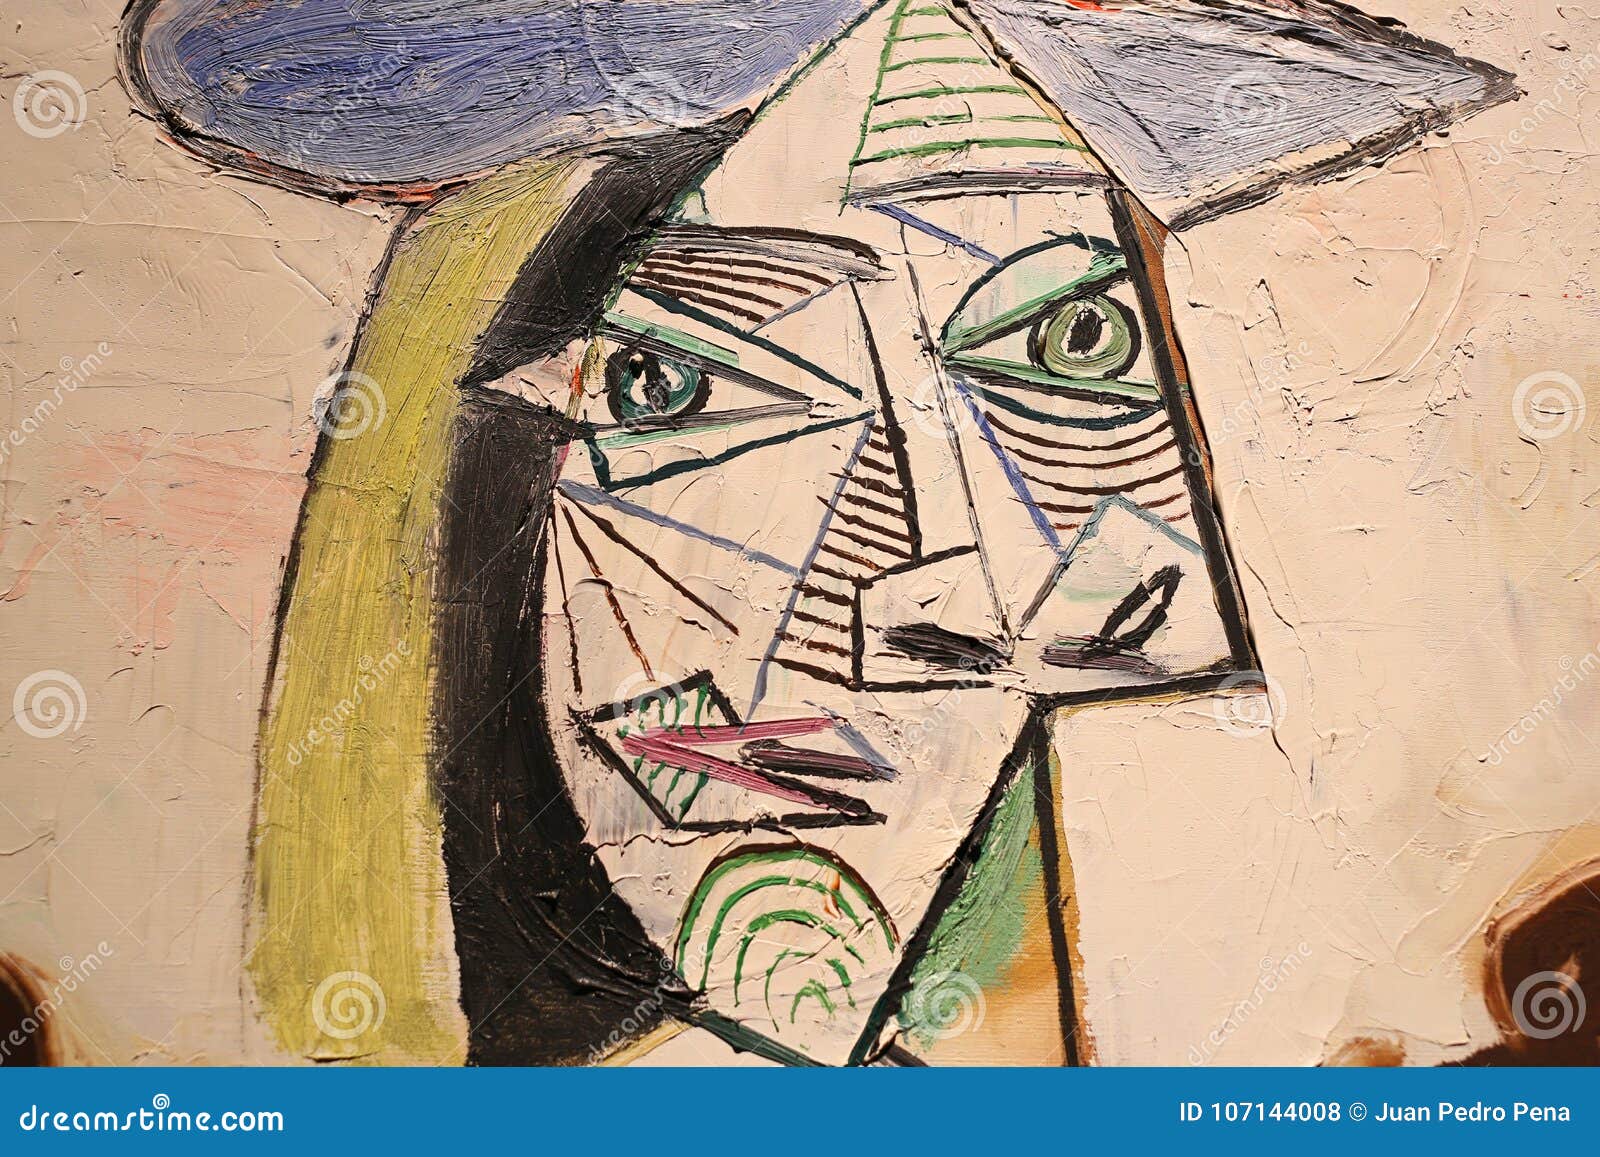 Picasso portrait